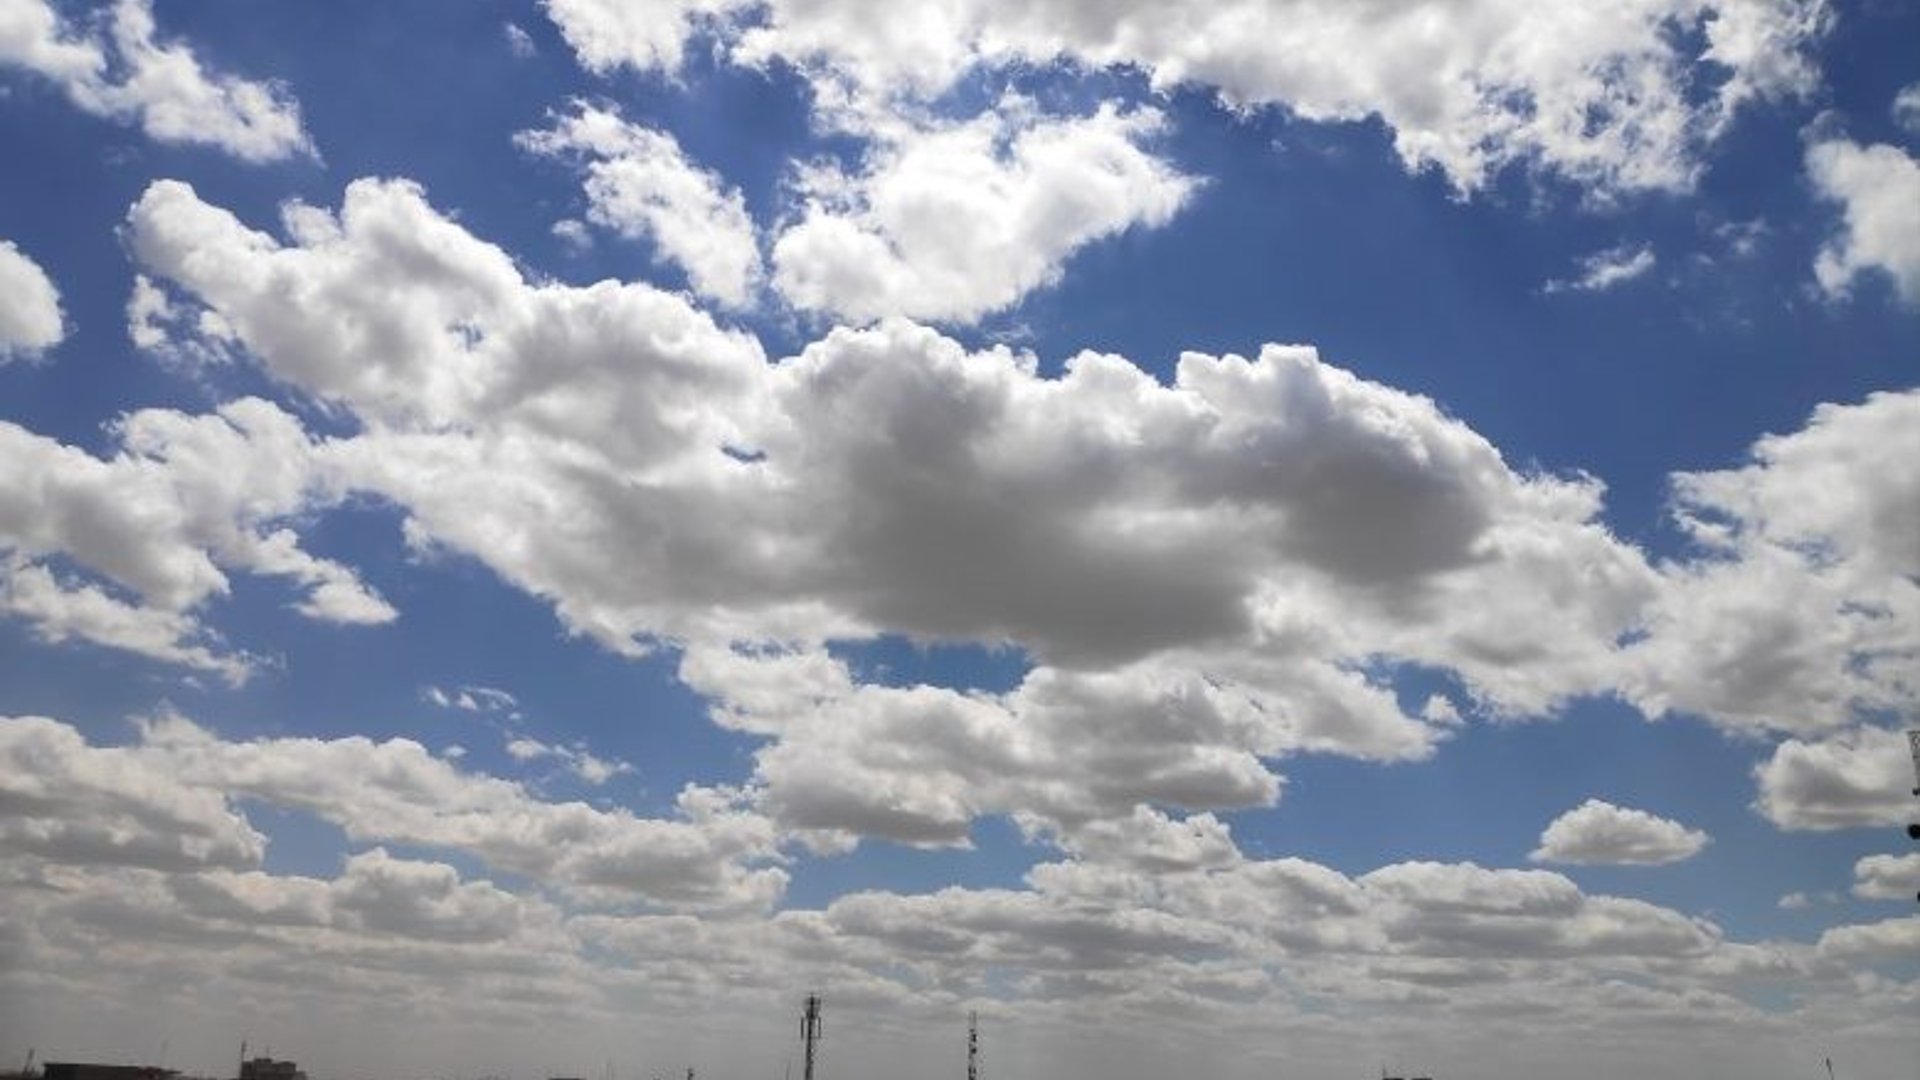 طقس العراق: صحو مع بعض الغيوم في عموم مناطق البلاد والحرارة معتدلة